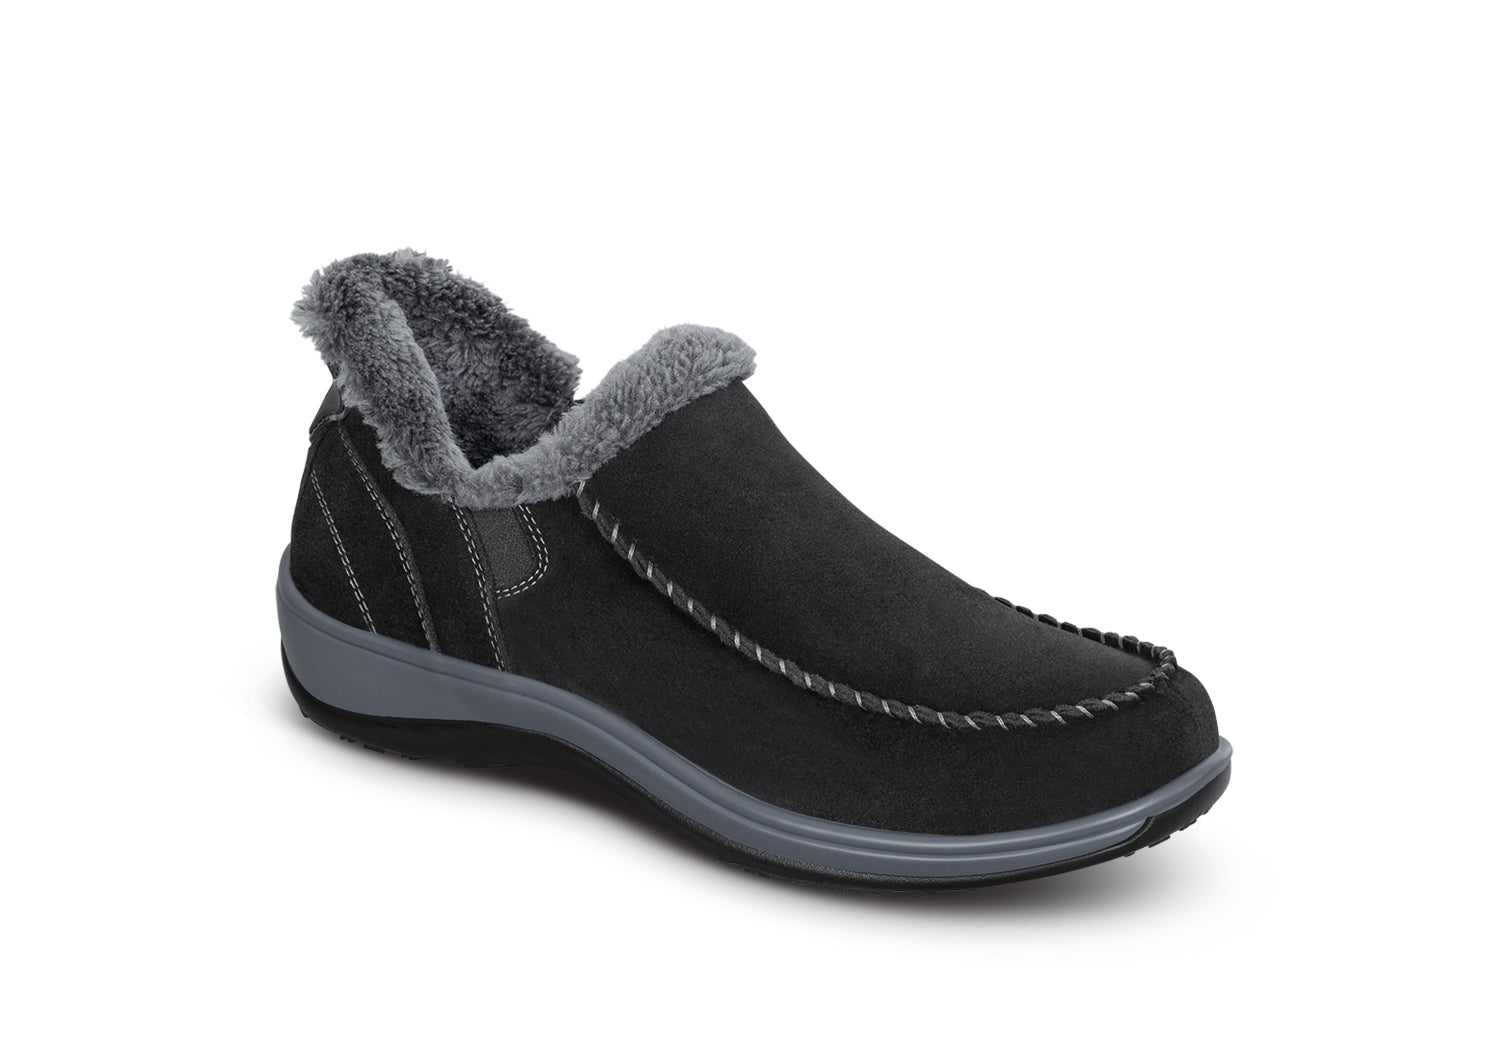 Buy White Slippers For Men-AH33W in Pakistan | online shopping in Pakistan